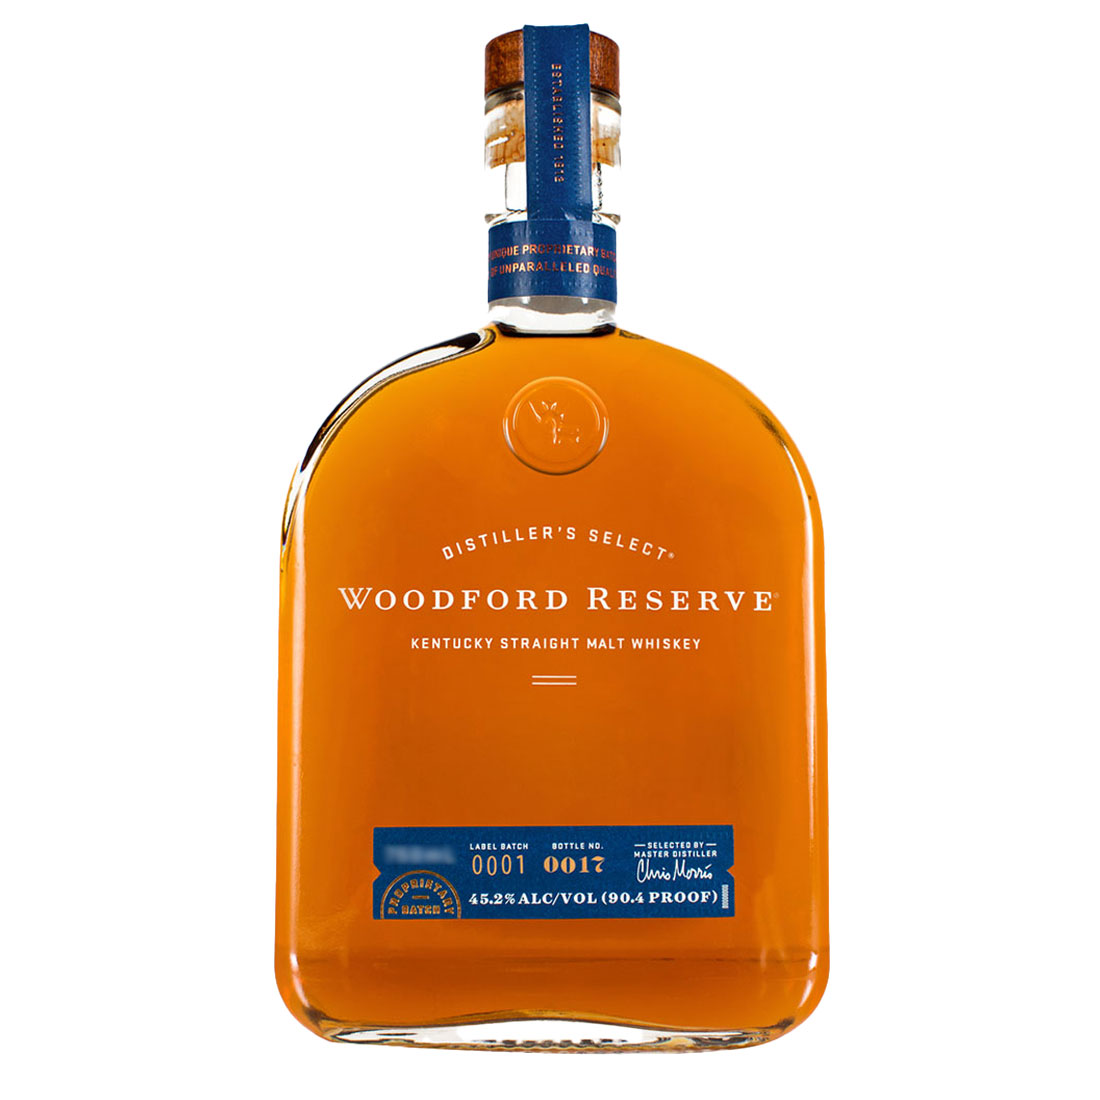 LB_Bottle-Woodford-Reserve-Kentucky-Straight-Malt